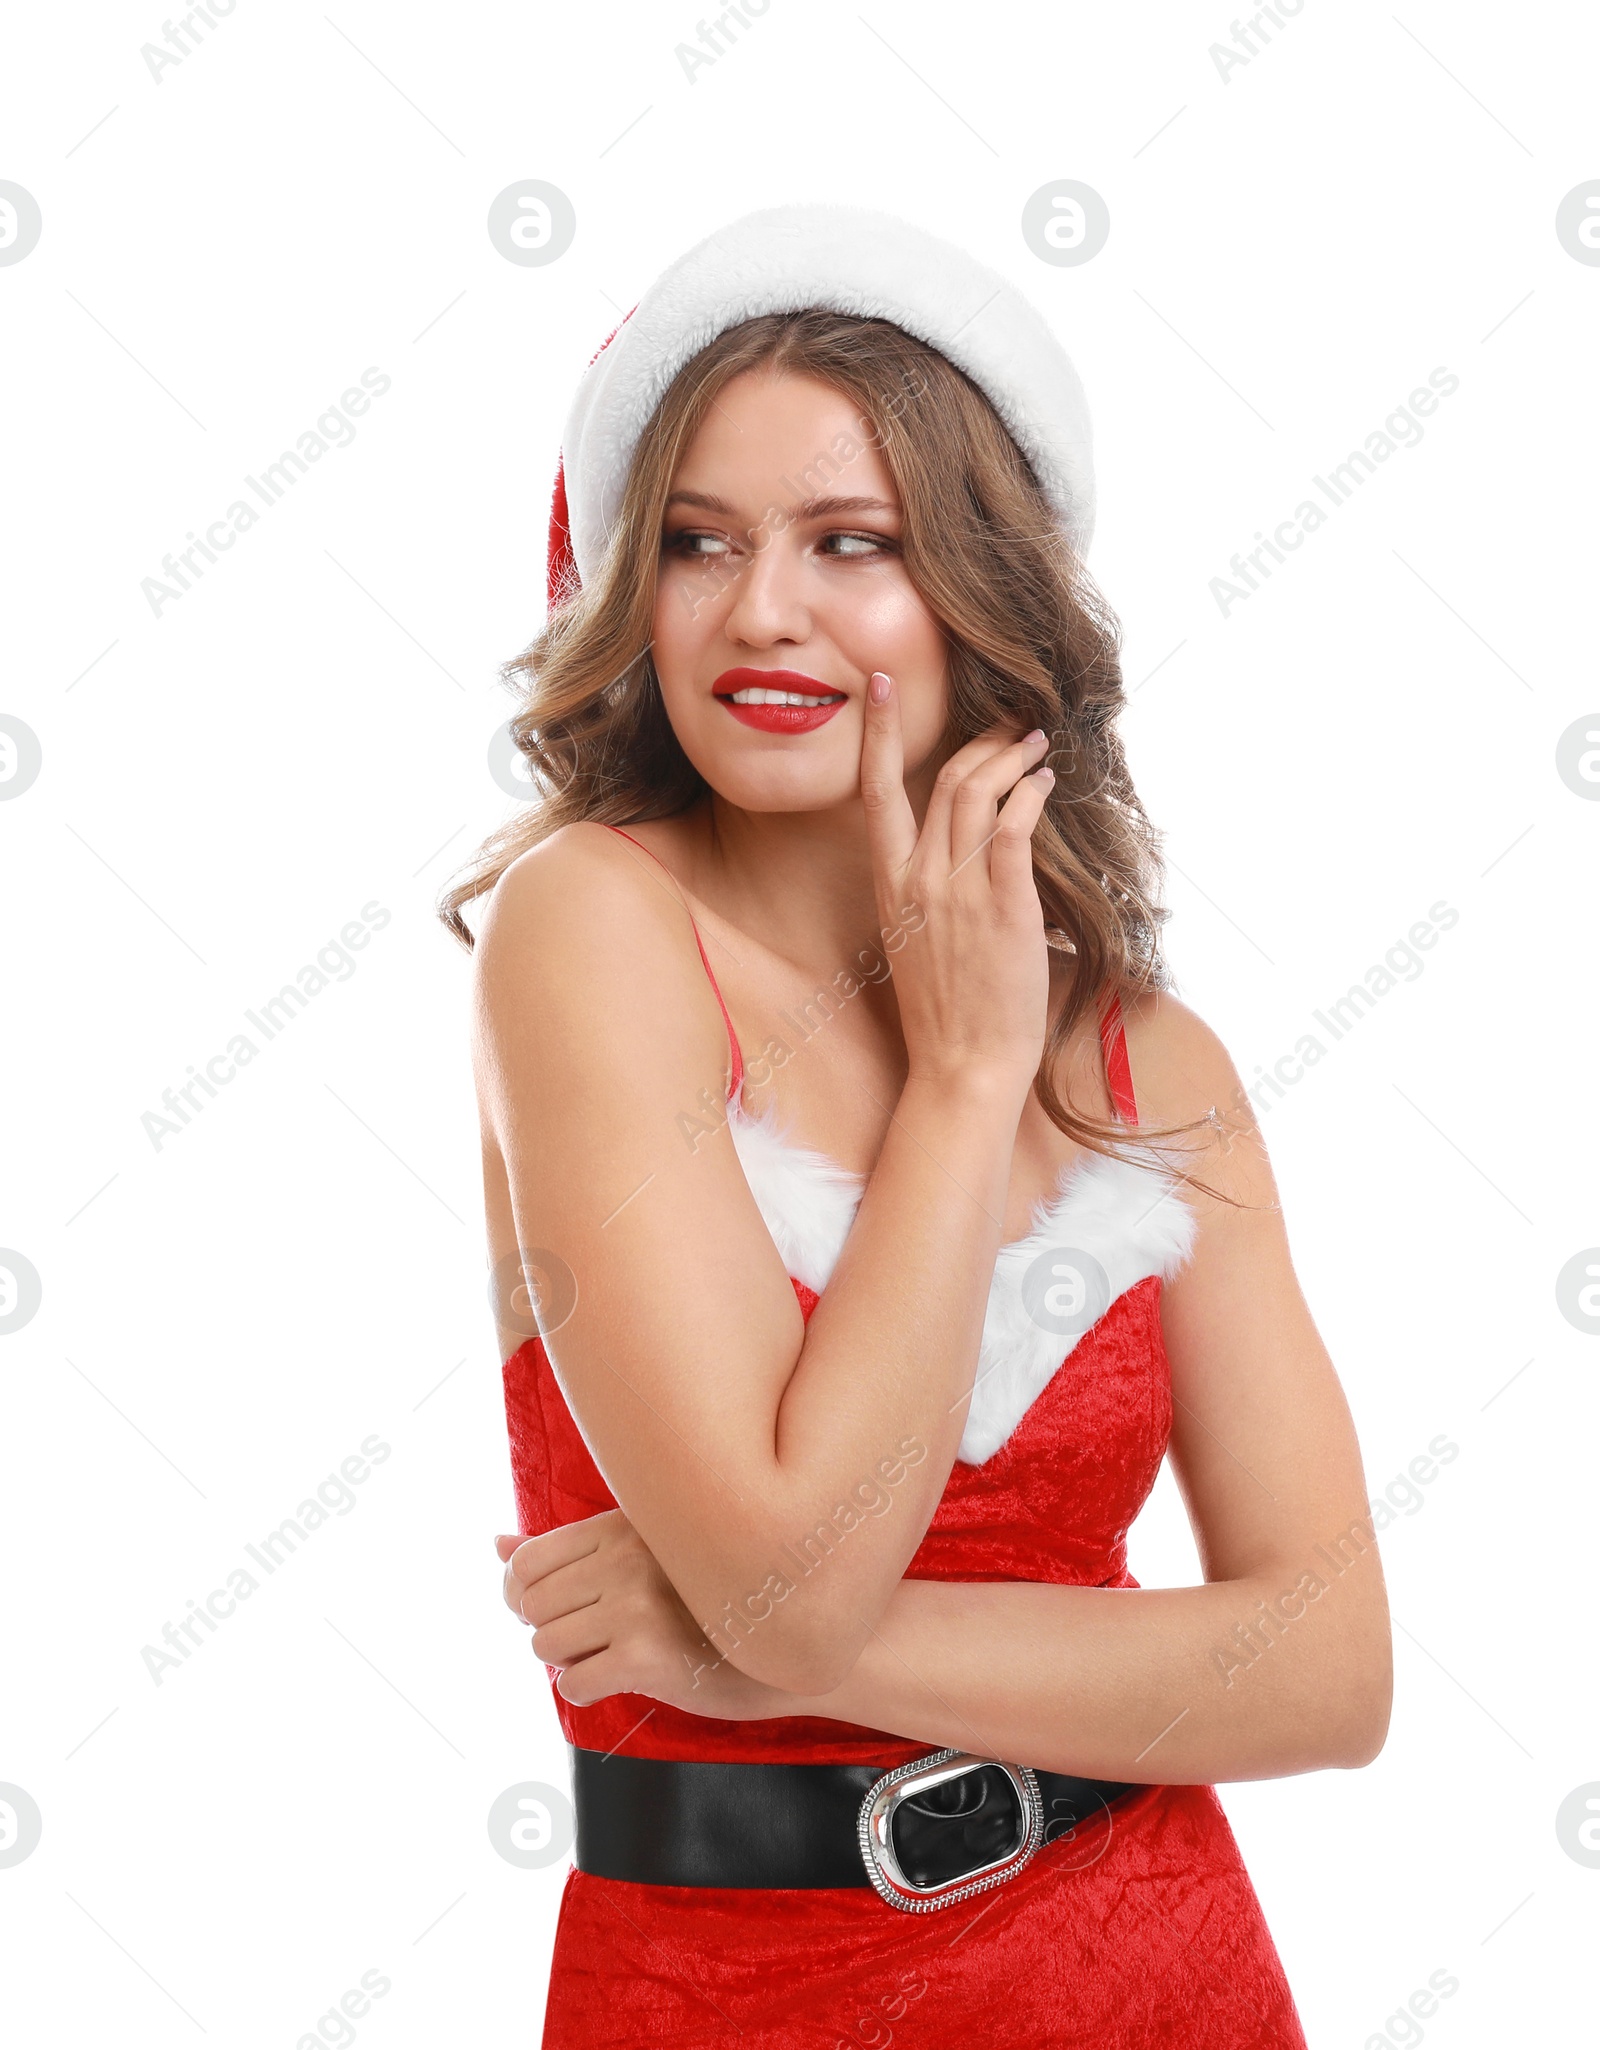 Photo of Beautiful Santa girl on white background. Christmas celebration